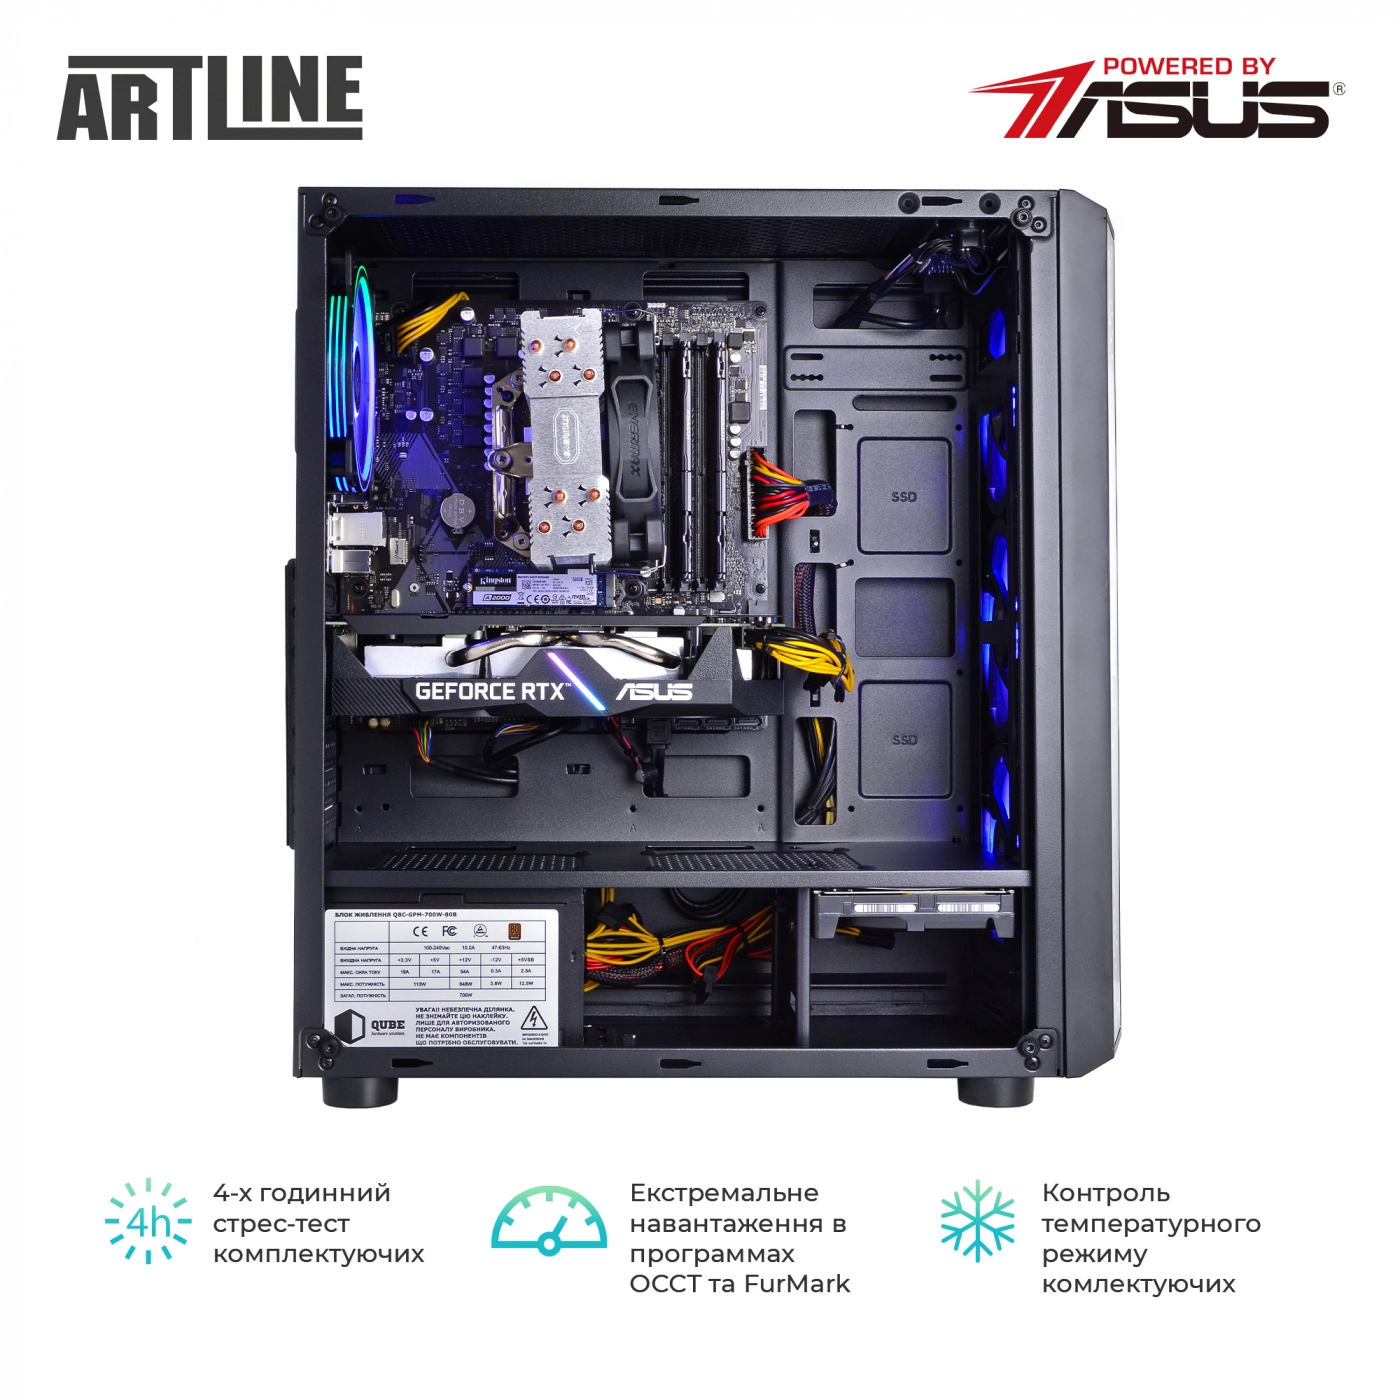 Купить Компьютер ARTLINE Gaming X73v30 - фото 8